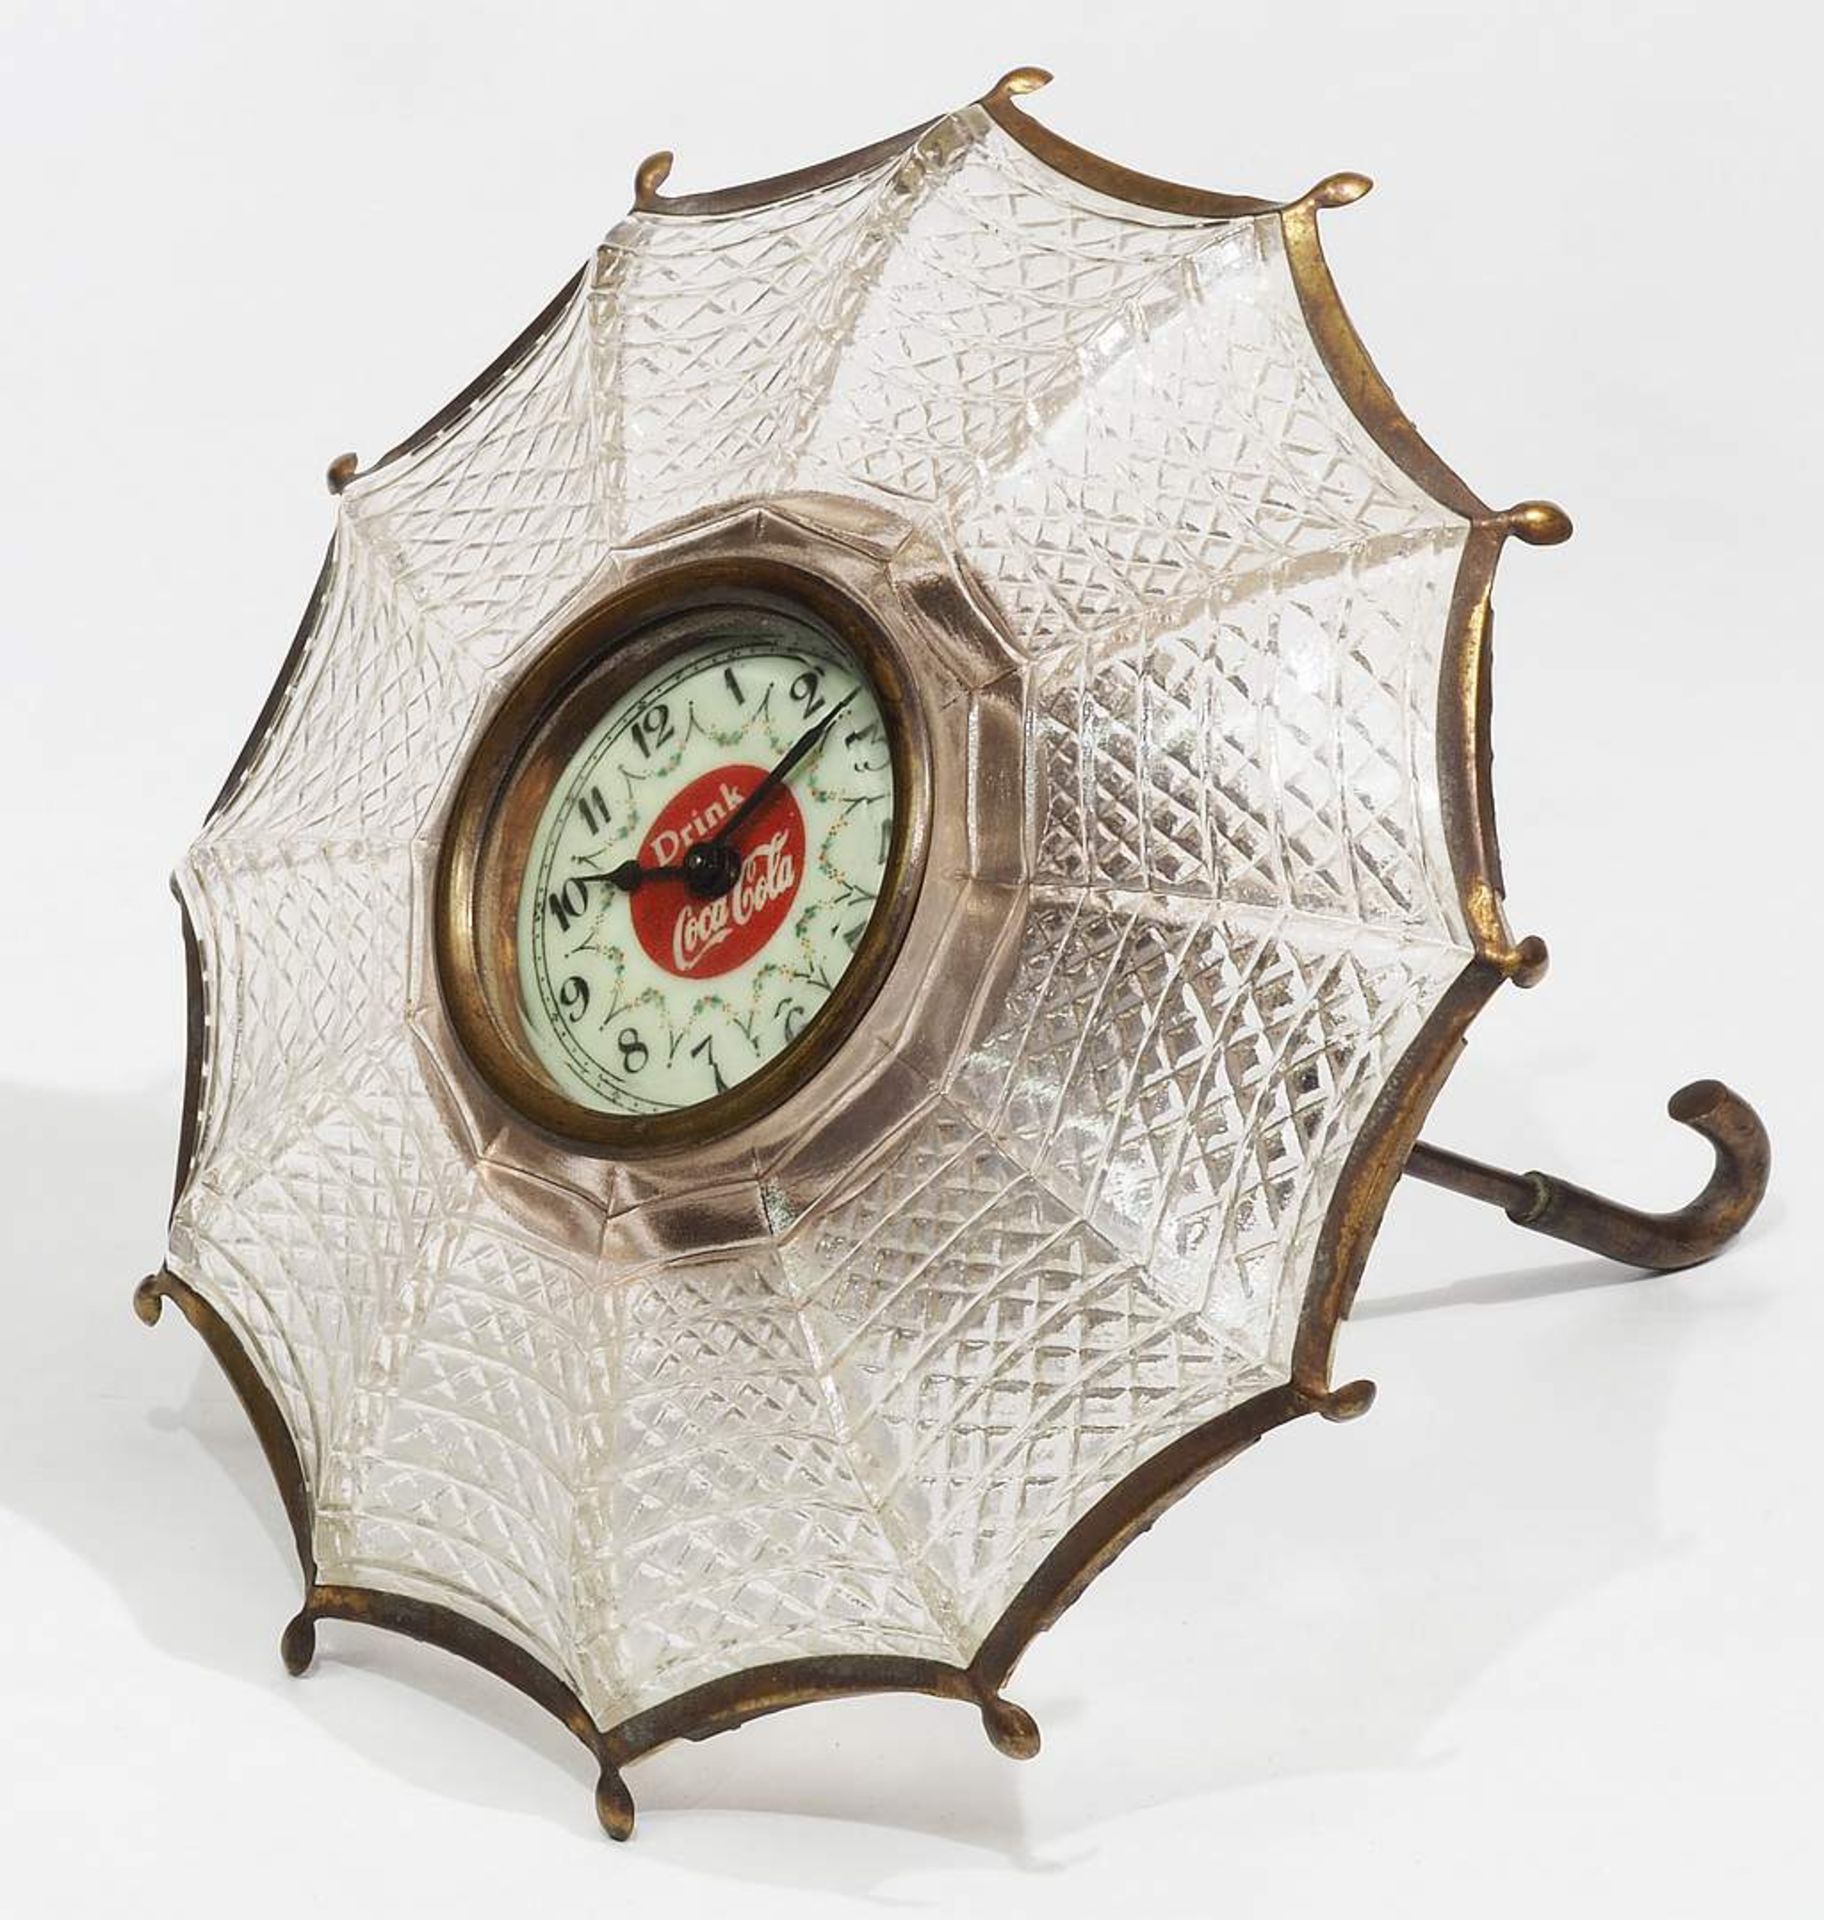 Regenschirm-Uhr um 1900, Werbung für Coca Cola. - Image 2 of 6